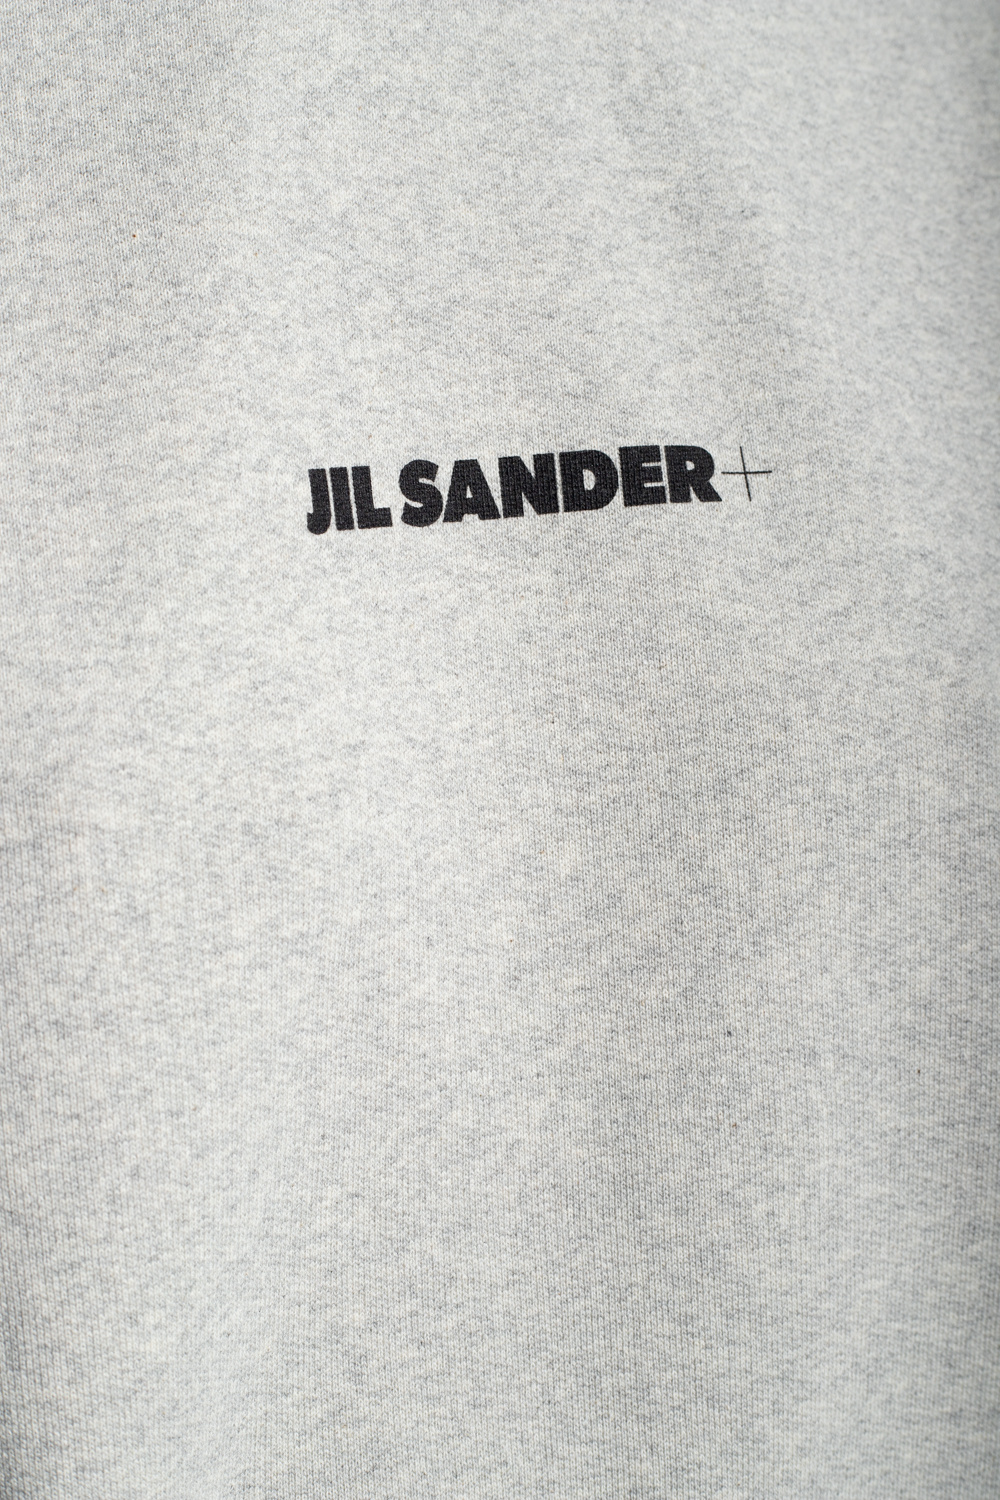 JIL SANDER+ Jil Sander knee-length drawstring shorts